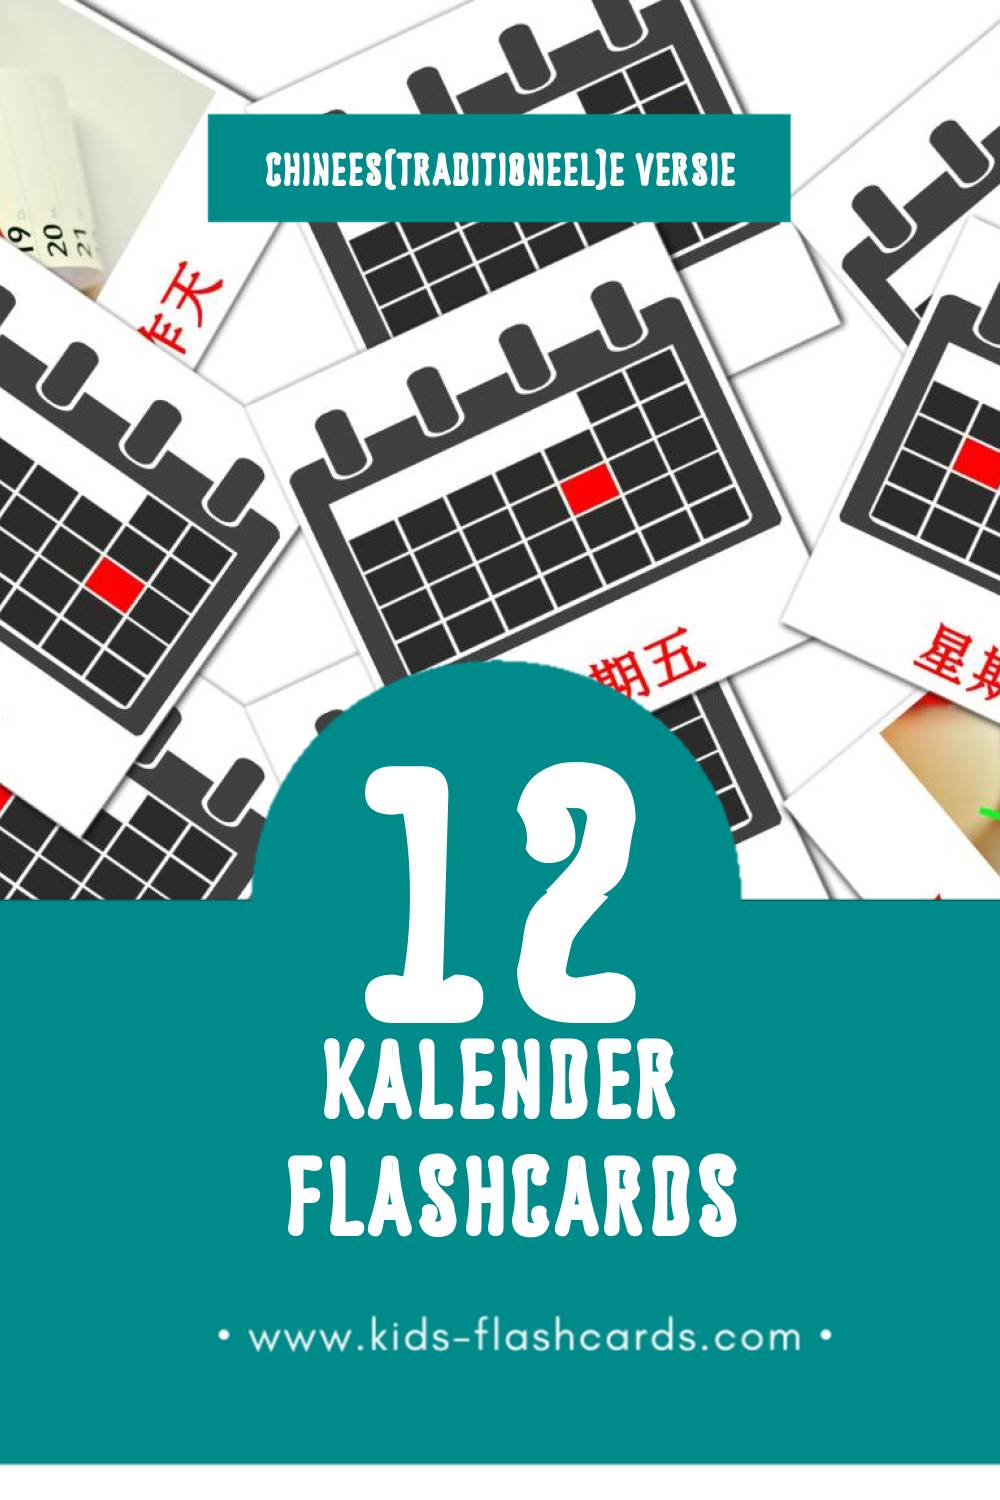 Visuele 달력 Flashcards voor Kleuters (12 kaarten in het Chinees(traditioneel))